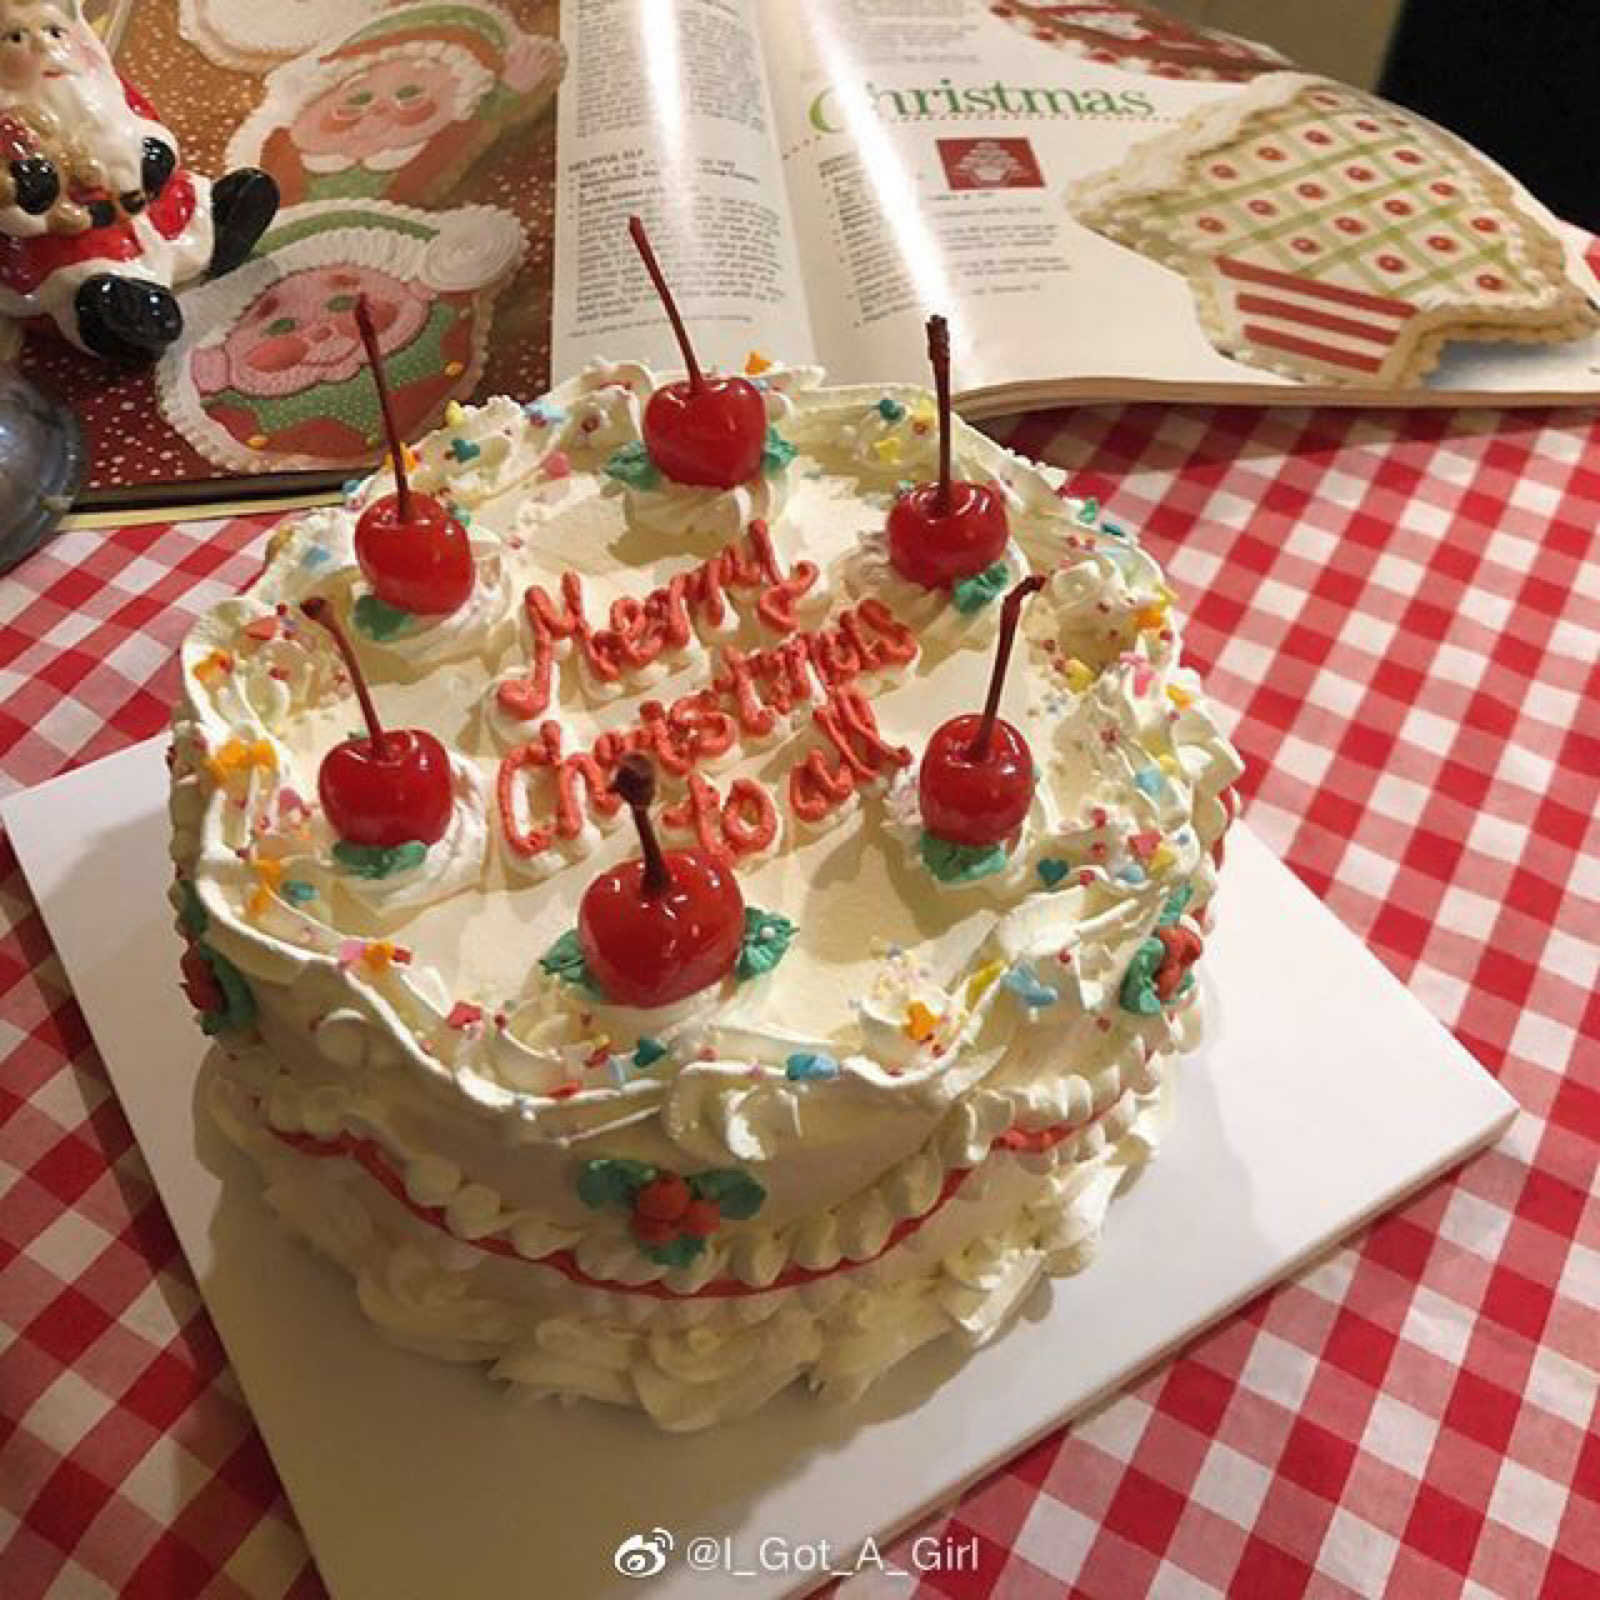 既好吃又好看的生日蛋糕 森系简约生日蛋糕做法